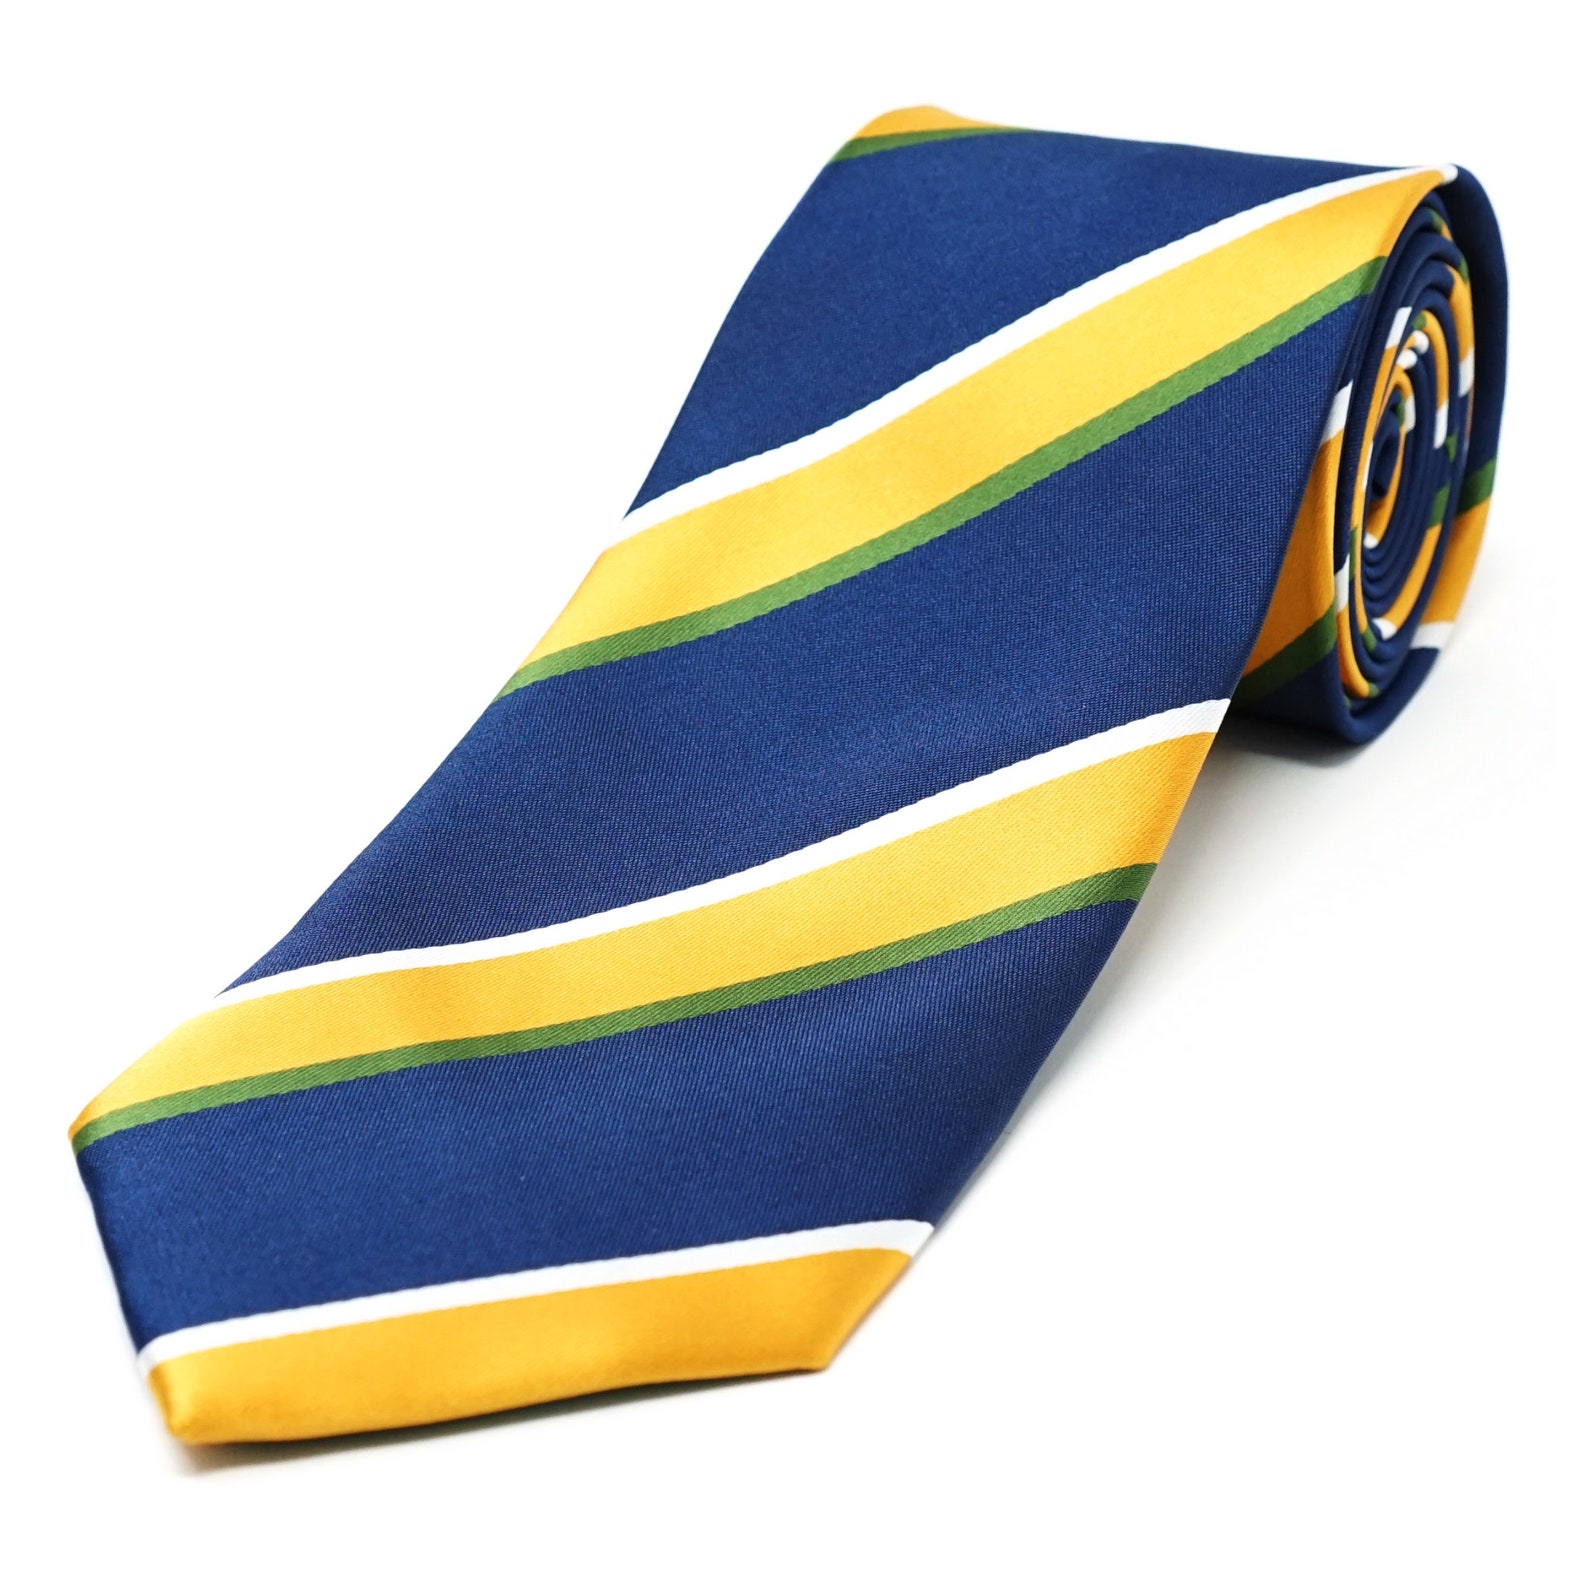 Utah Jazz Tie Inspired by the Utah Jazz Basketball Team Colors: Navy ...